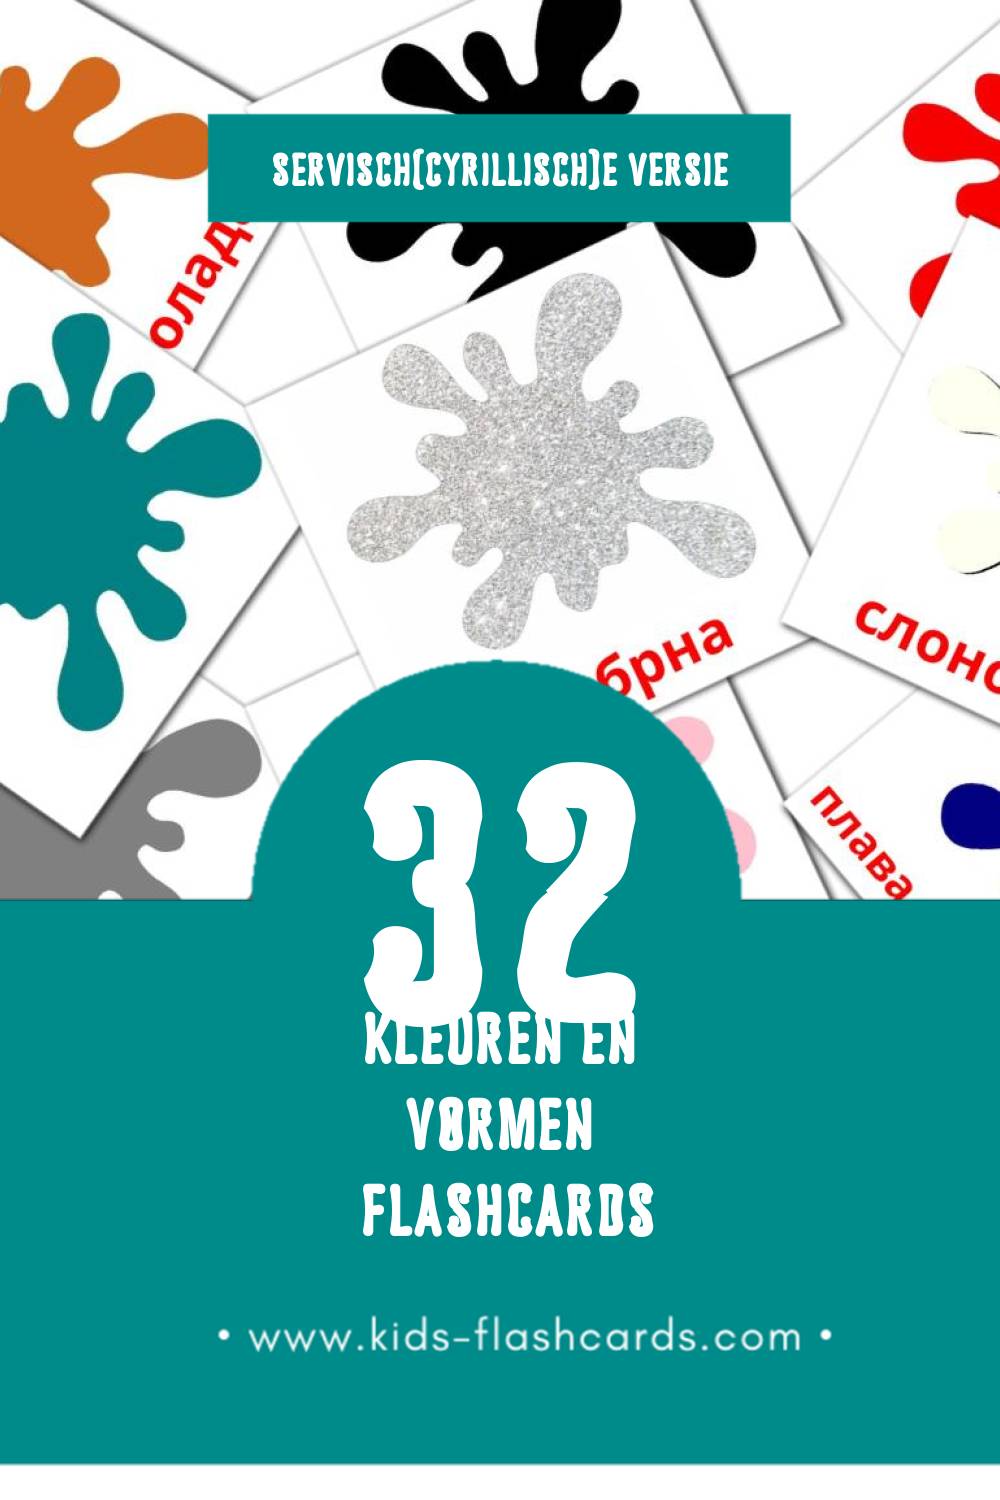 Visuele Боје и облици Flashcards voor Kleuters (32 kaarten in het Servisch(cyrillisch))